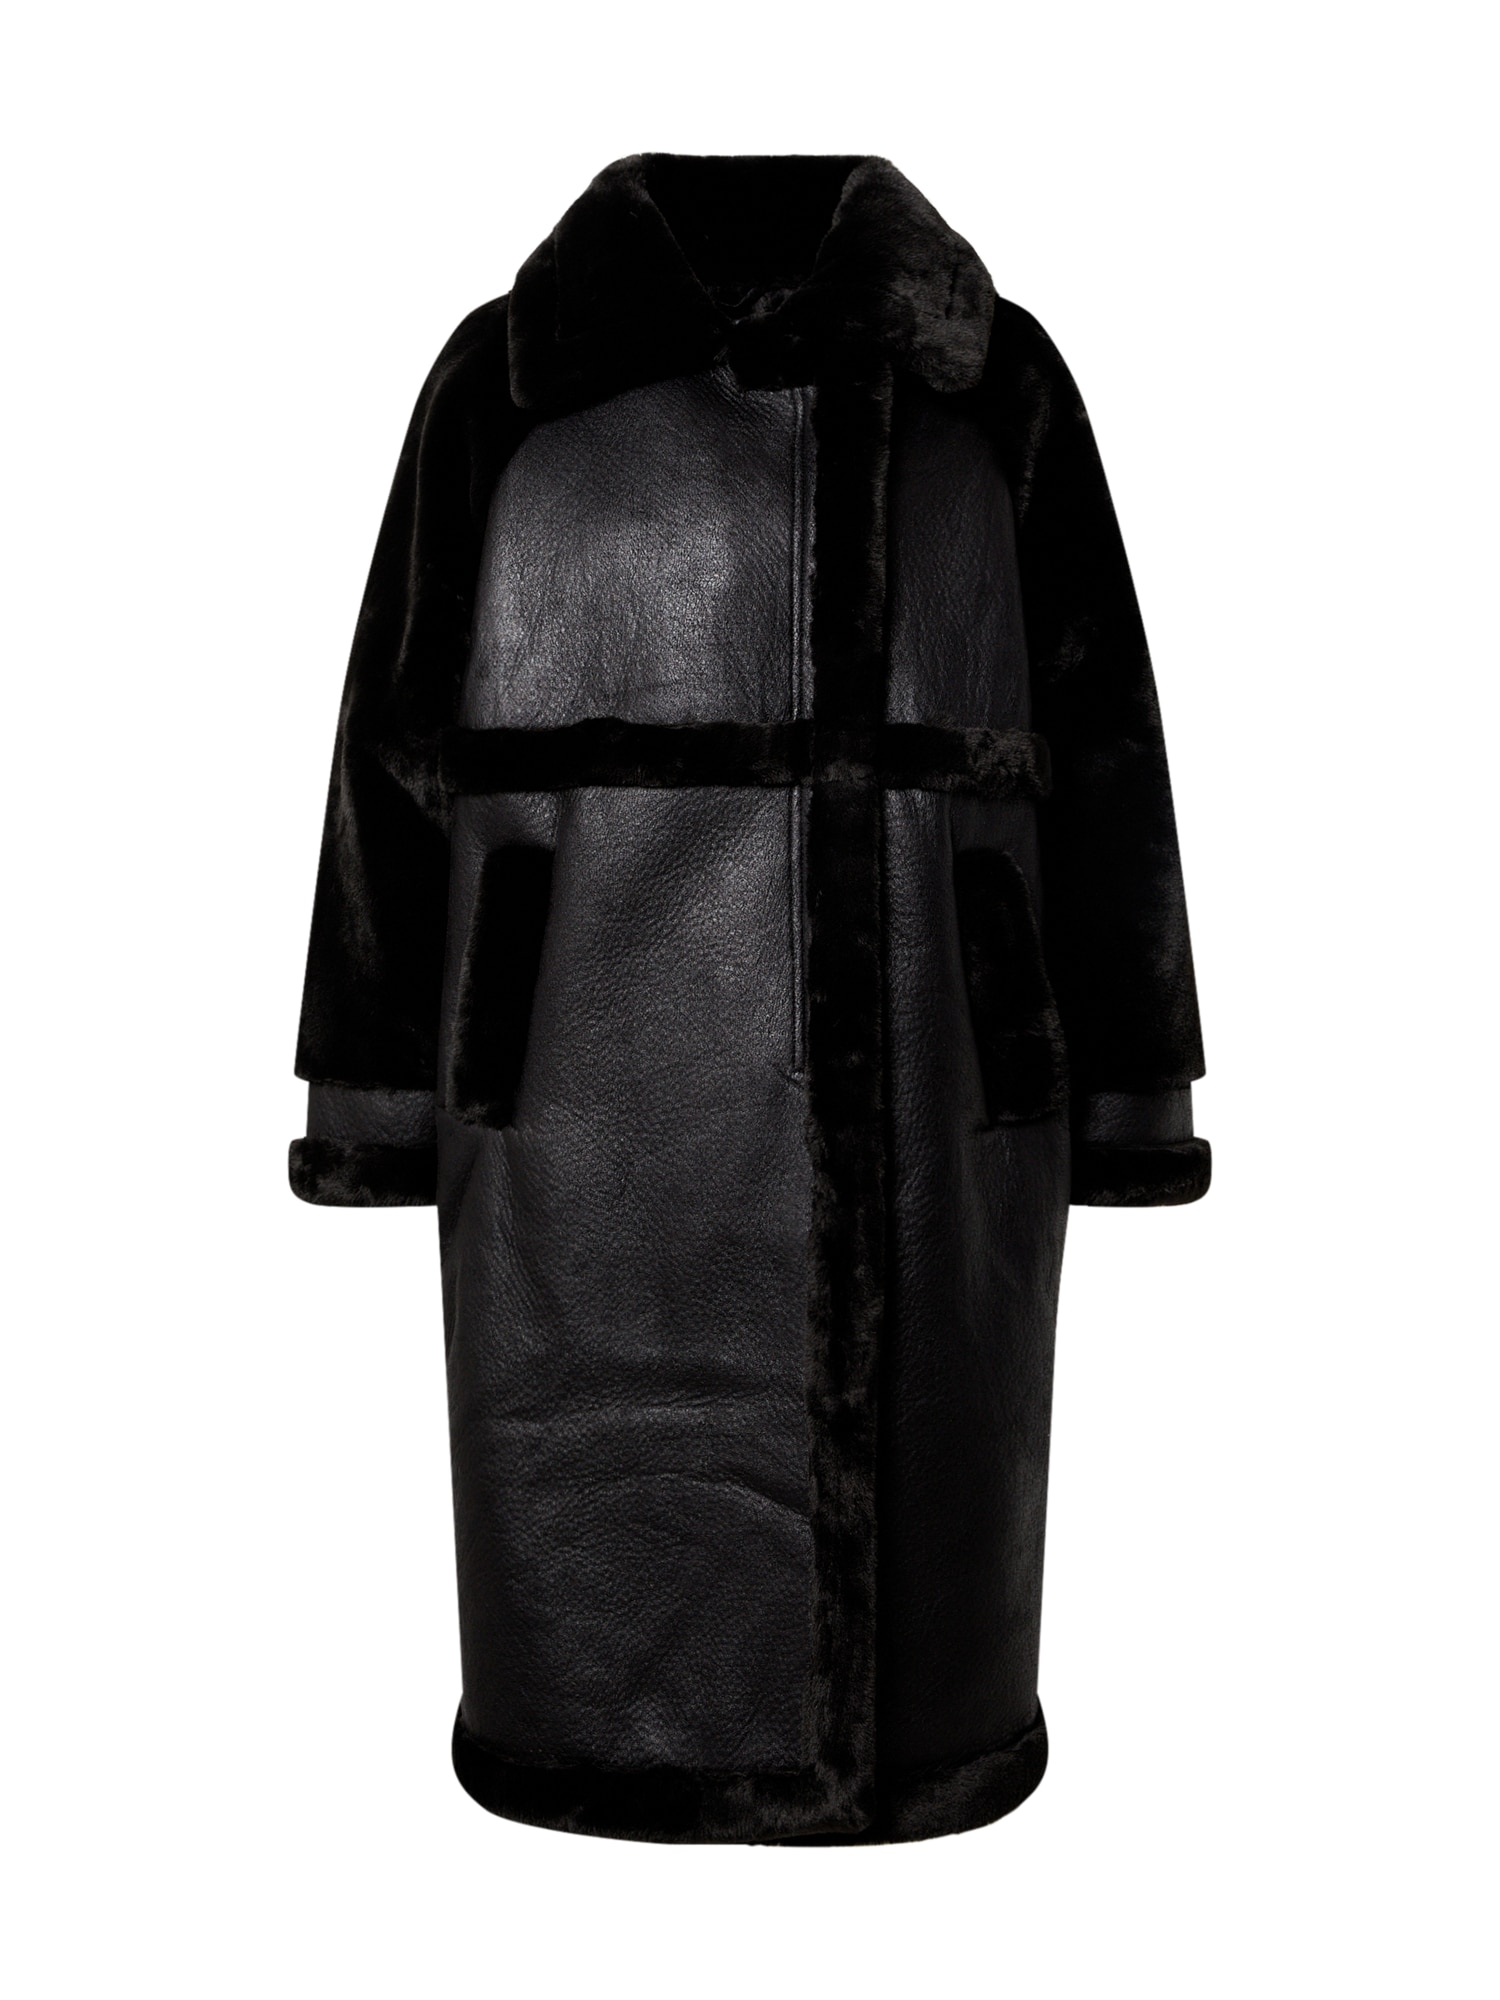 Prechodný kabát Antje čierna EDITED